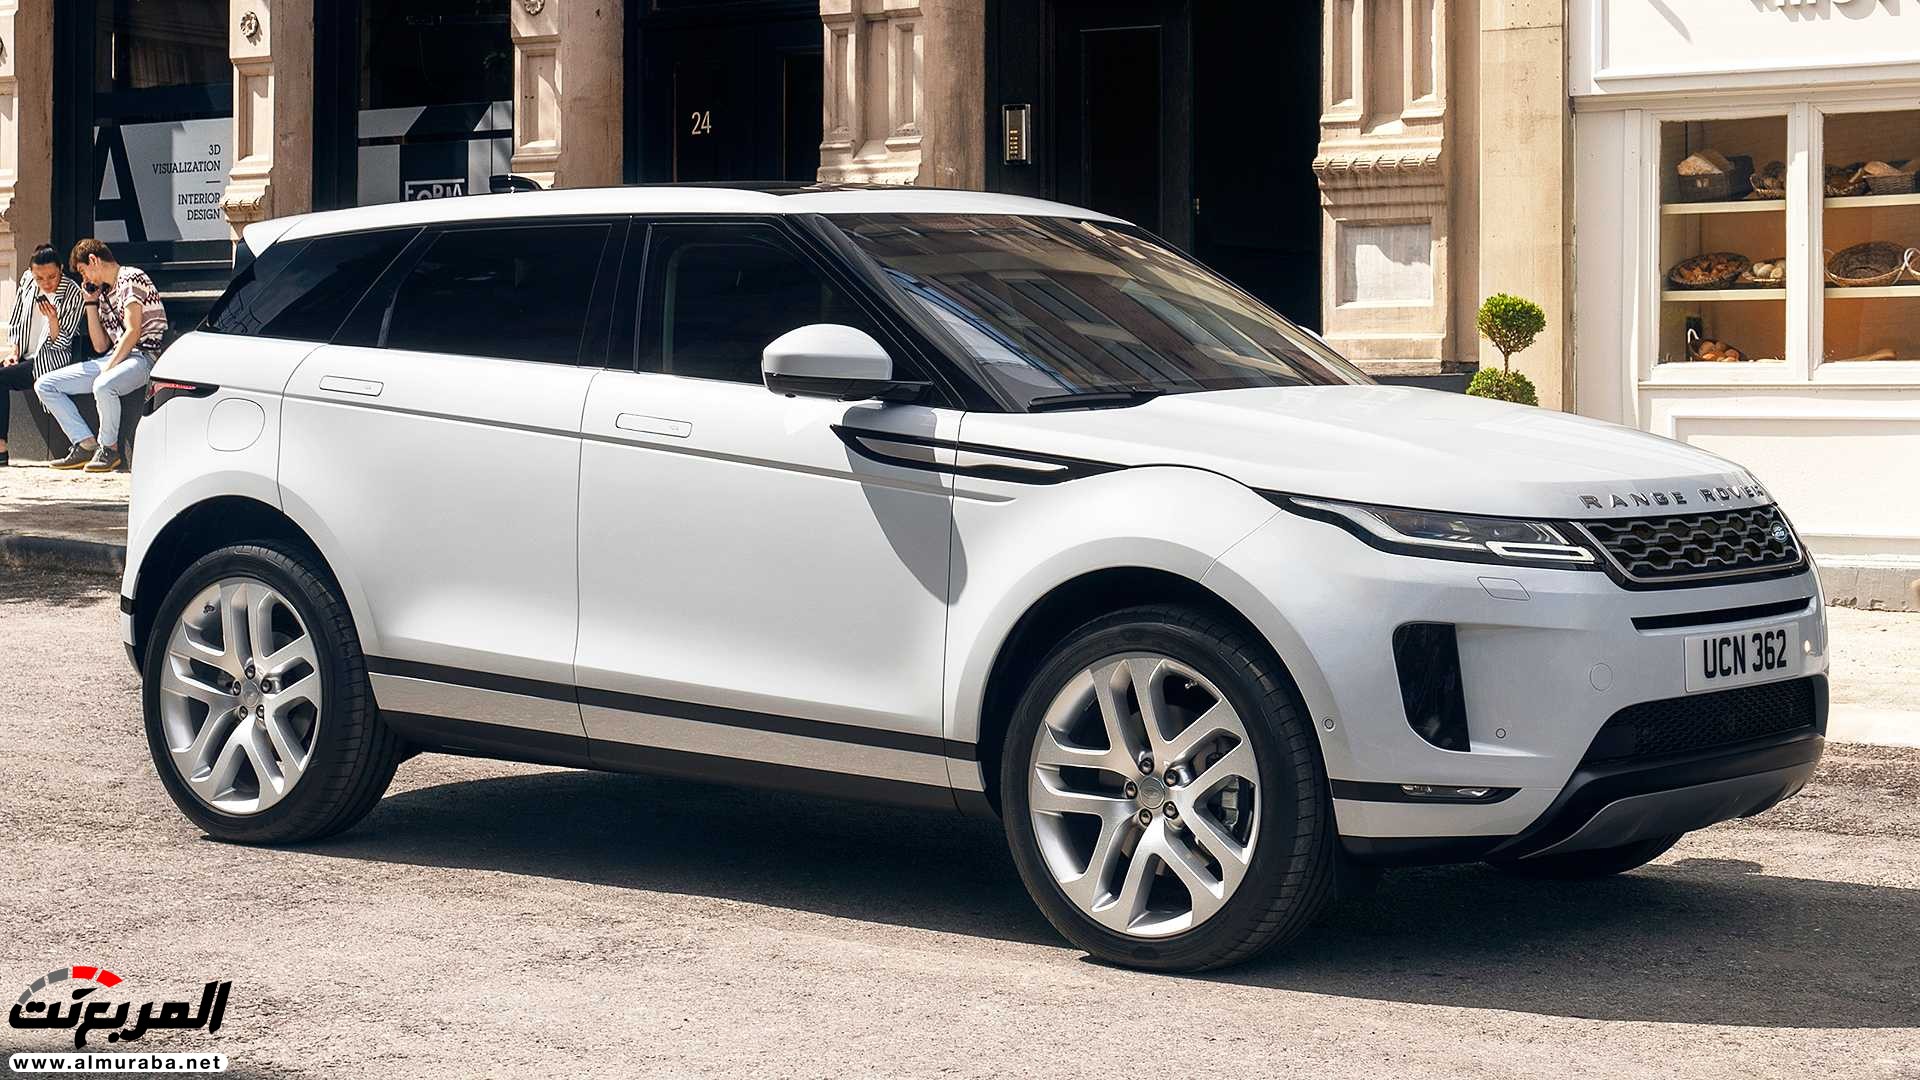 اهم 7 معلومات عن رنج روفر ايفوك 2020 الجديدة كلياً Range Rover Evoque 378